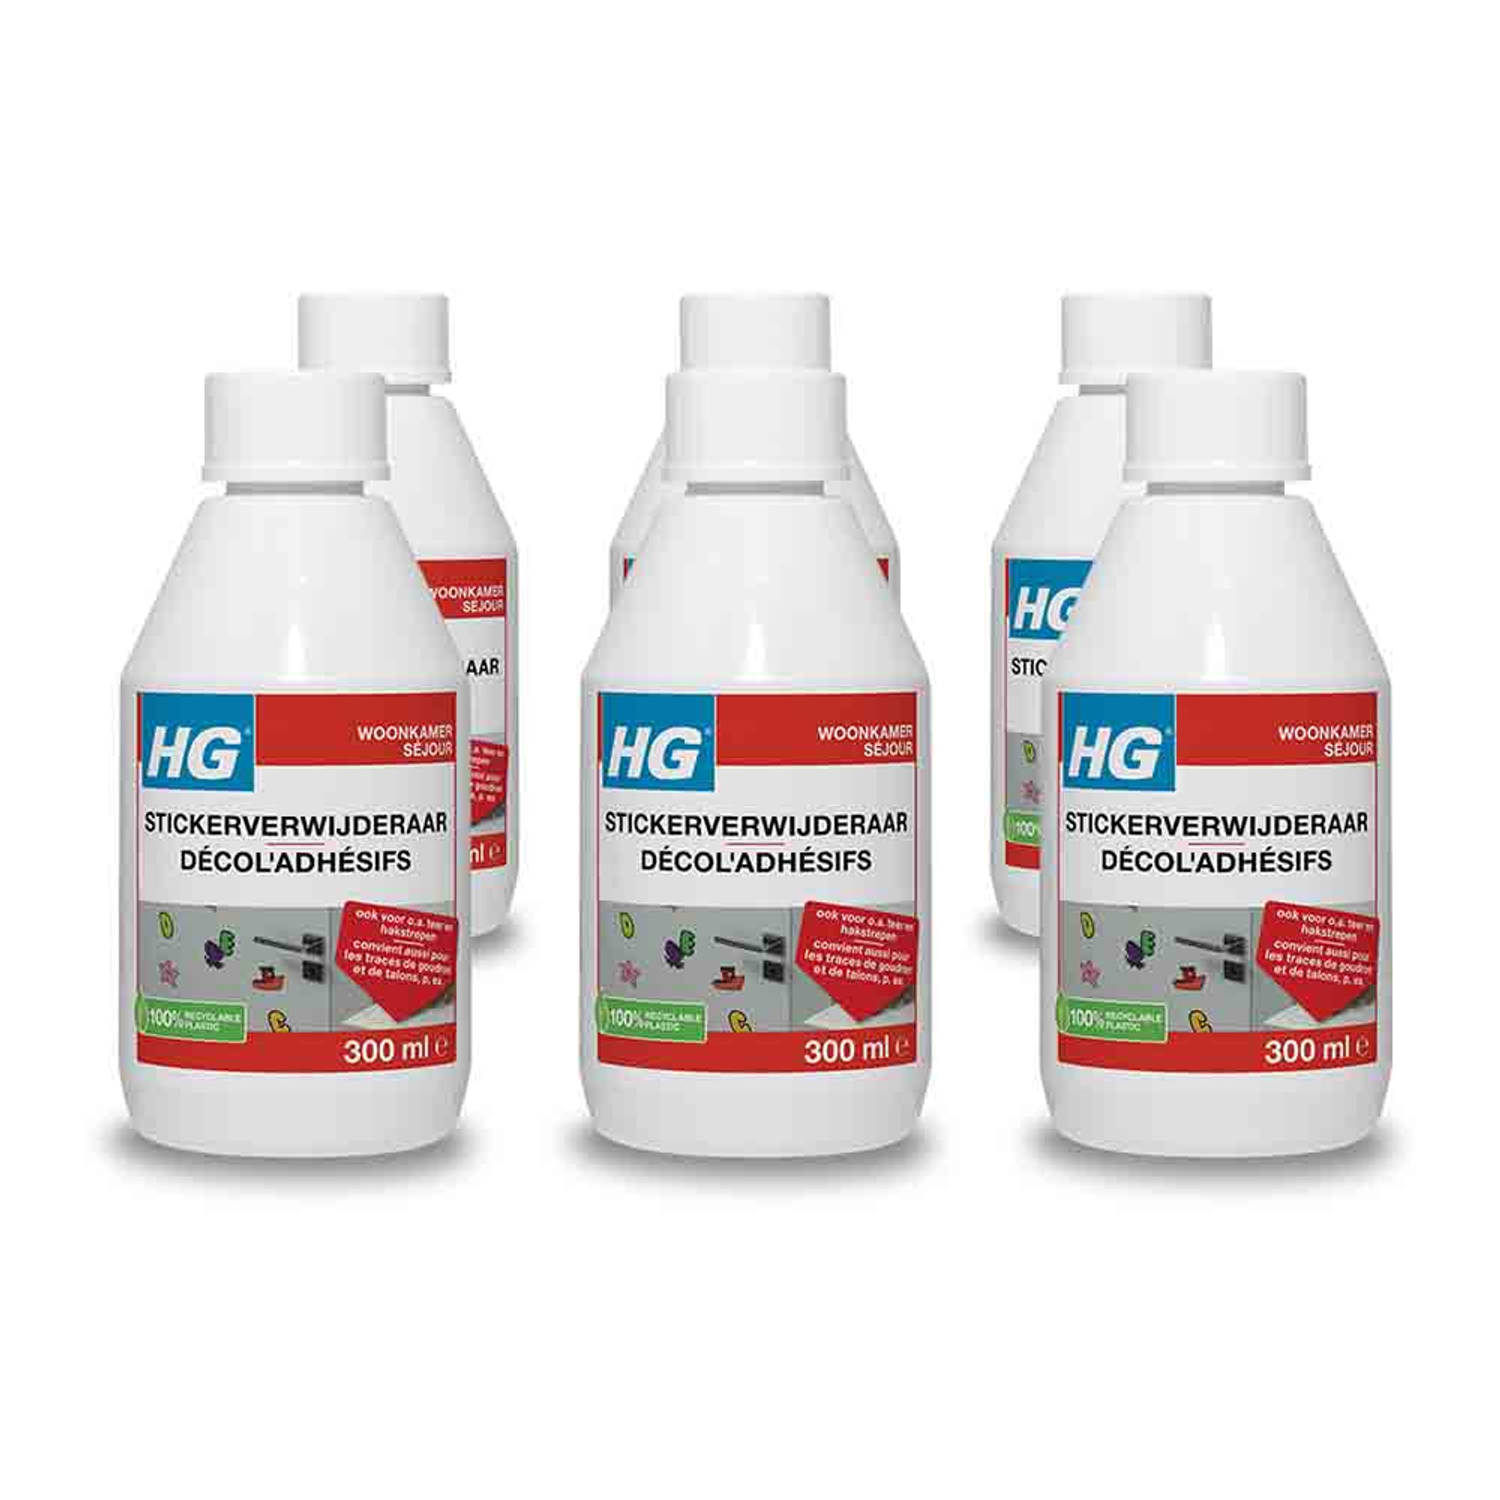 HG stickerverwijderaar 300 ml - 6 stuks